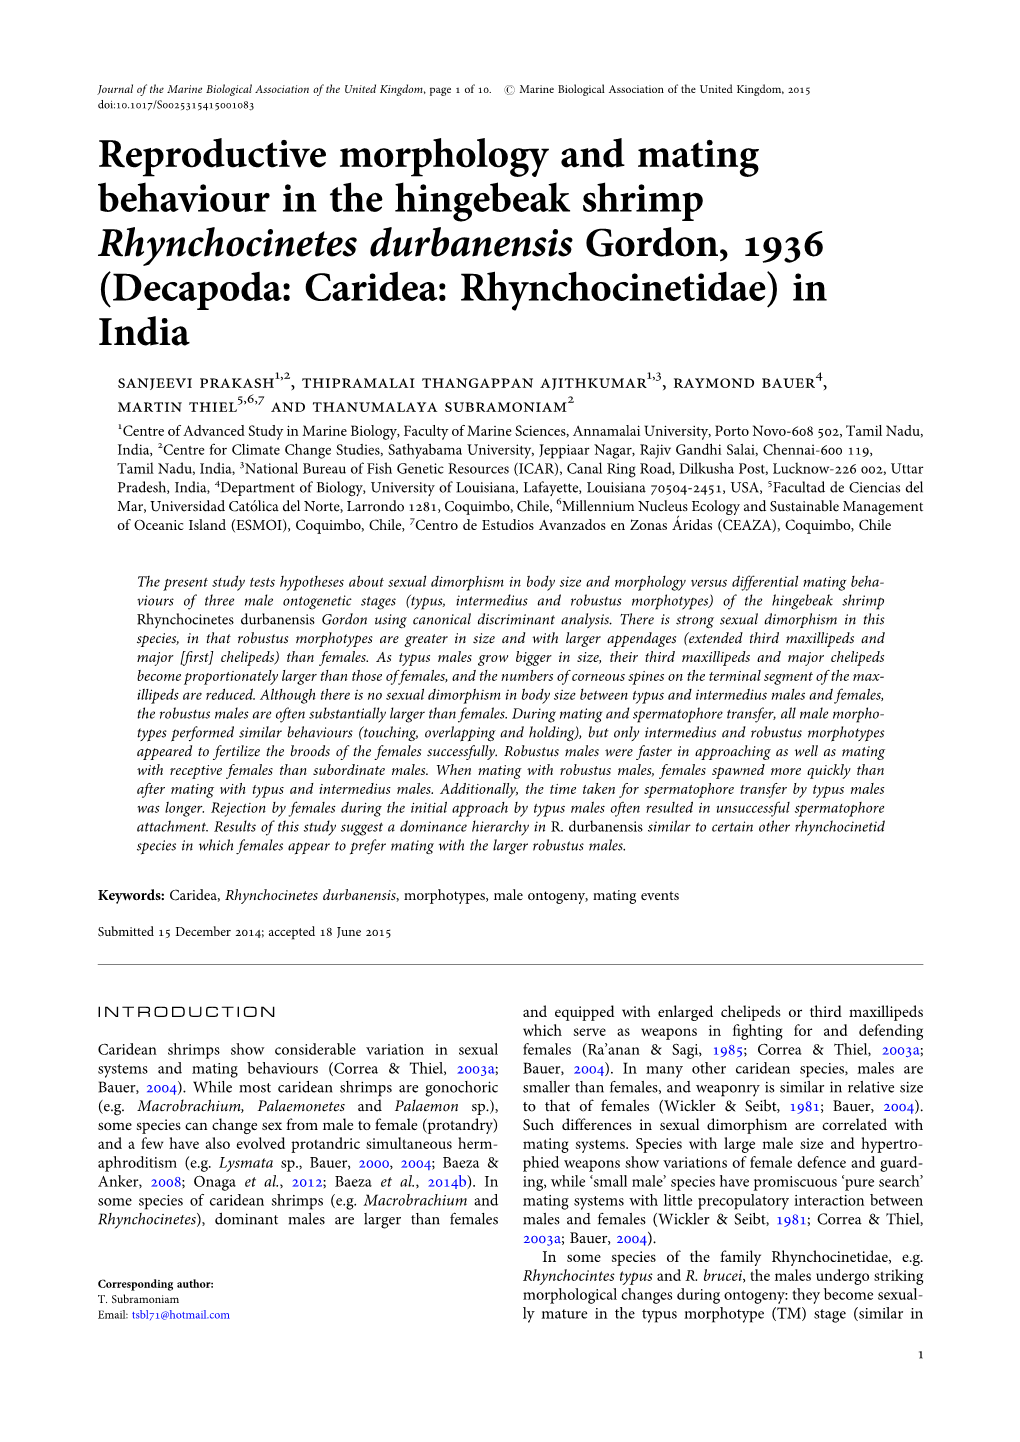 Reproductive Morphology and Mating Behaviour in the Hingebeak Shrimp